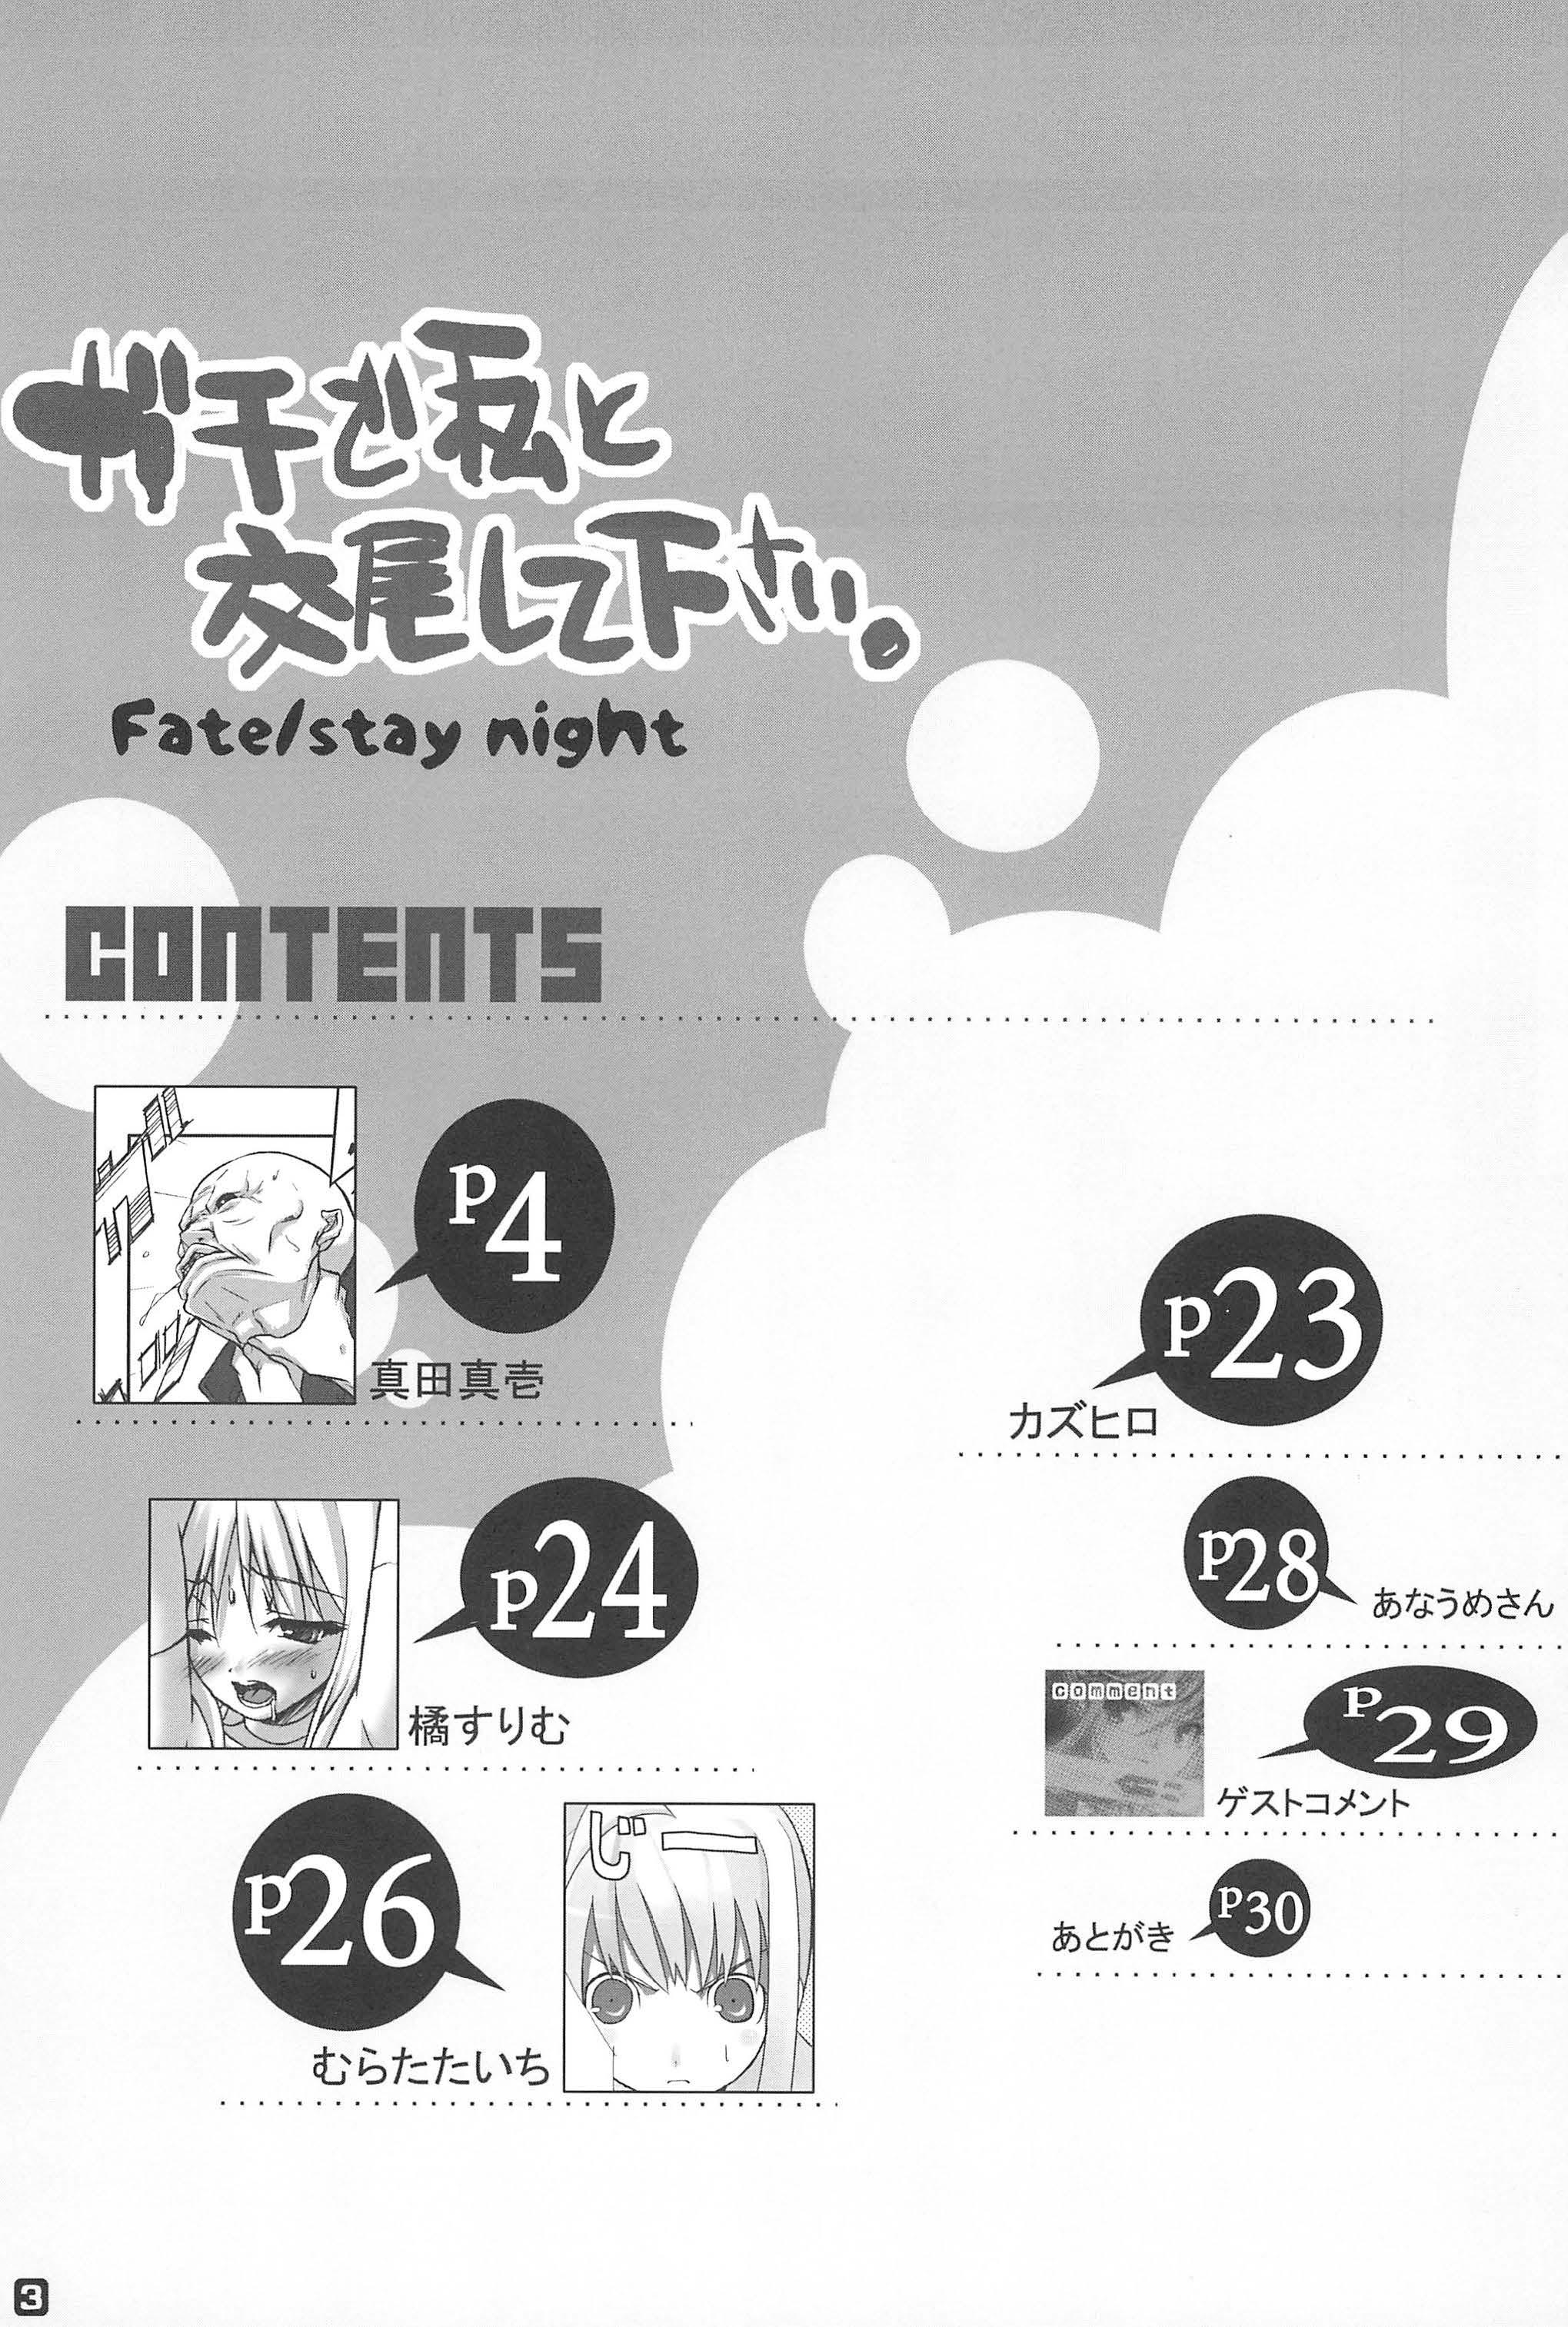 First Time Gachi de Watashi to Koubi Shite Kudasai. - Fate stay night Tats - Page 3